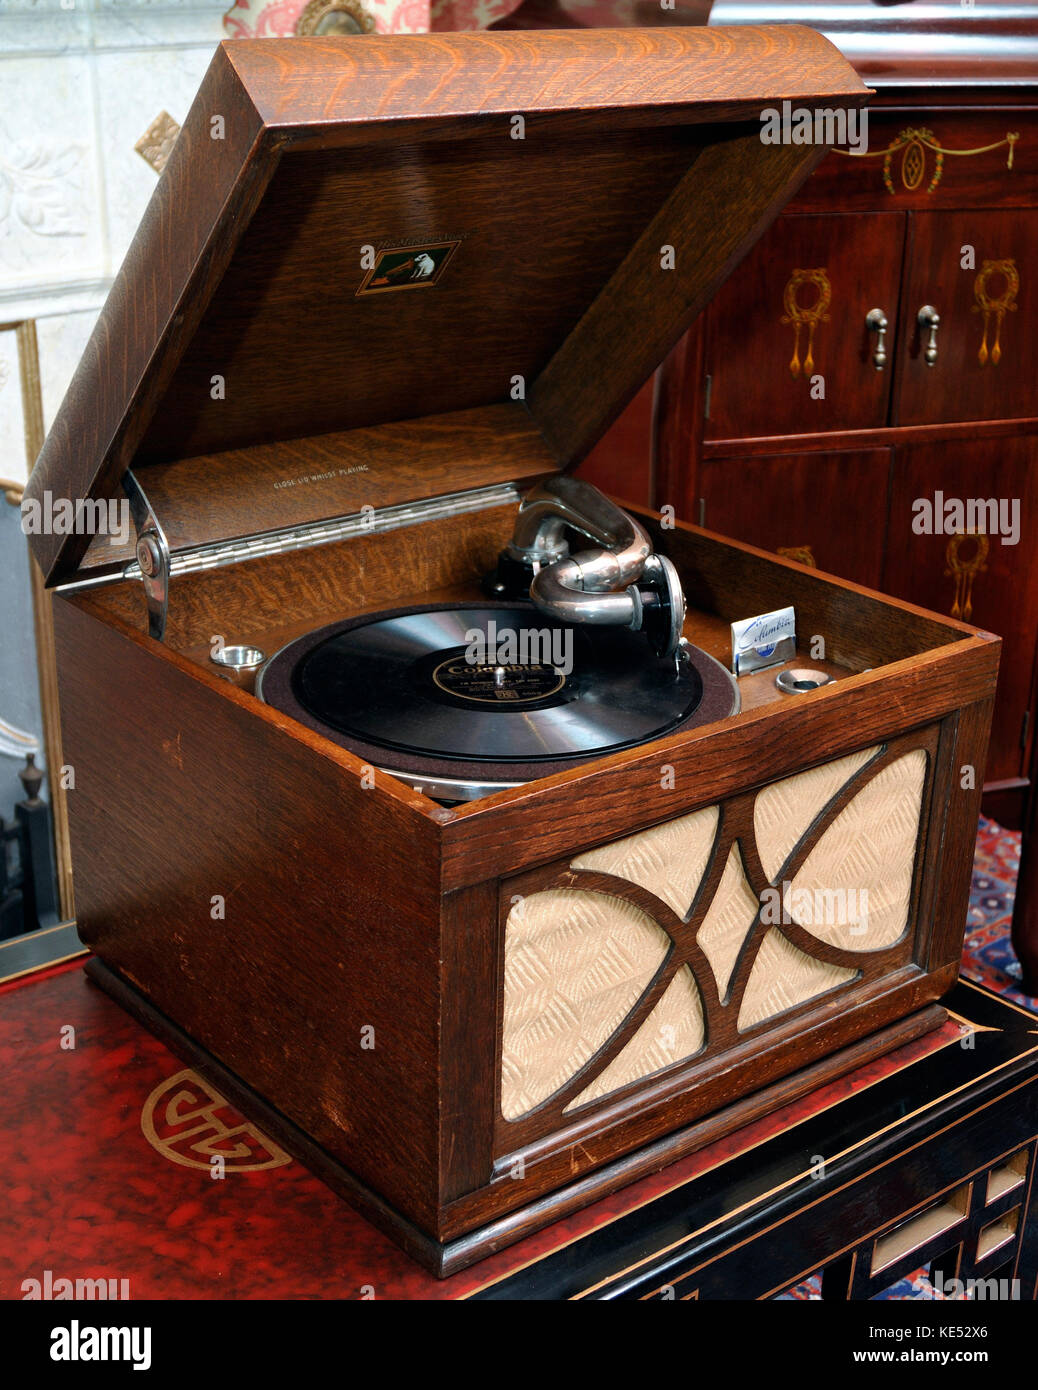 Grammofono portatile dal 1940s. HMV modello 102. Fabbricato 1931 - 1958. Sound box sulla parte anteriore del grammofono. Giradischi con Parlophone record. Ha suonato con il coperchio aperto. Foto Stock